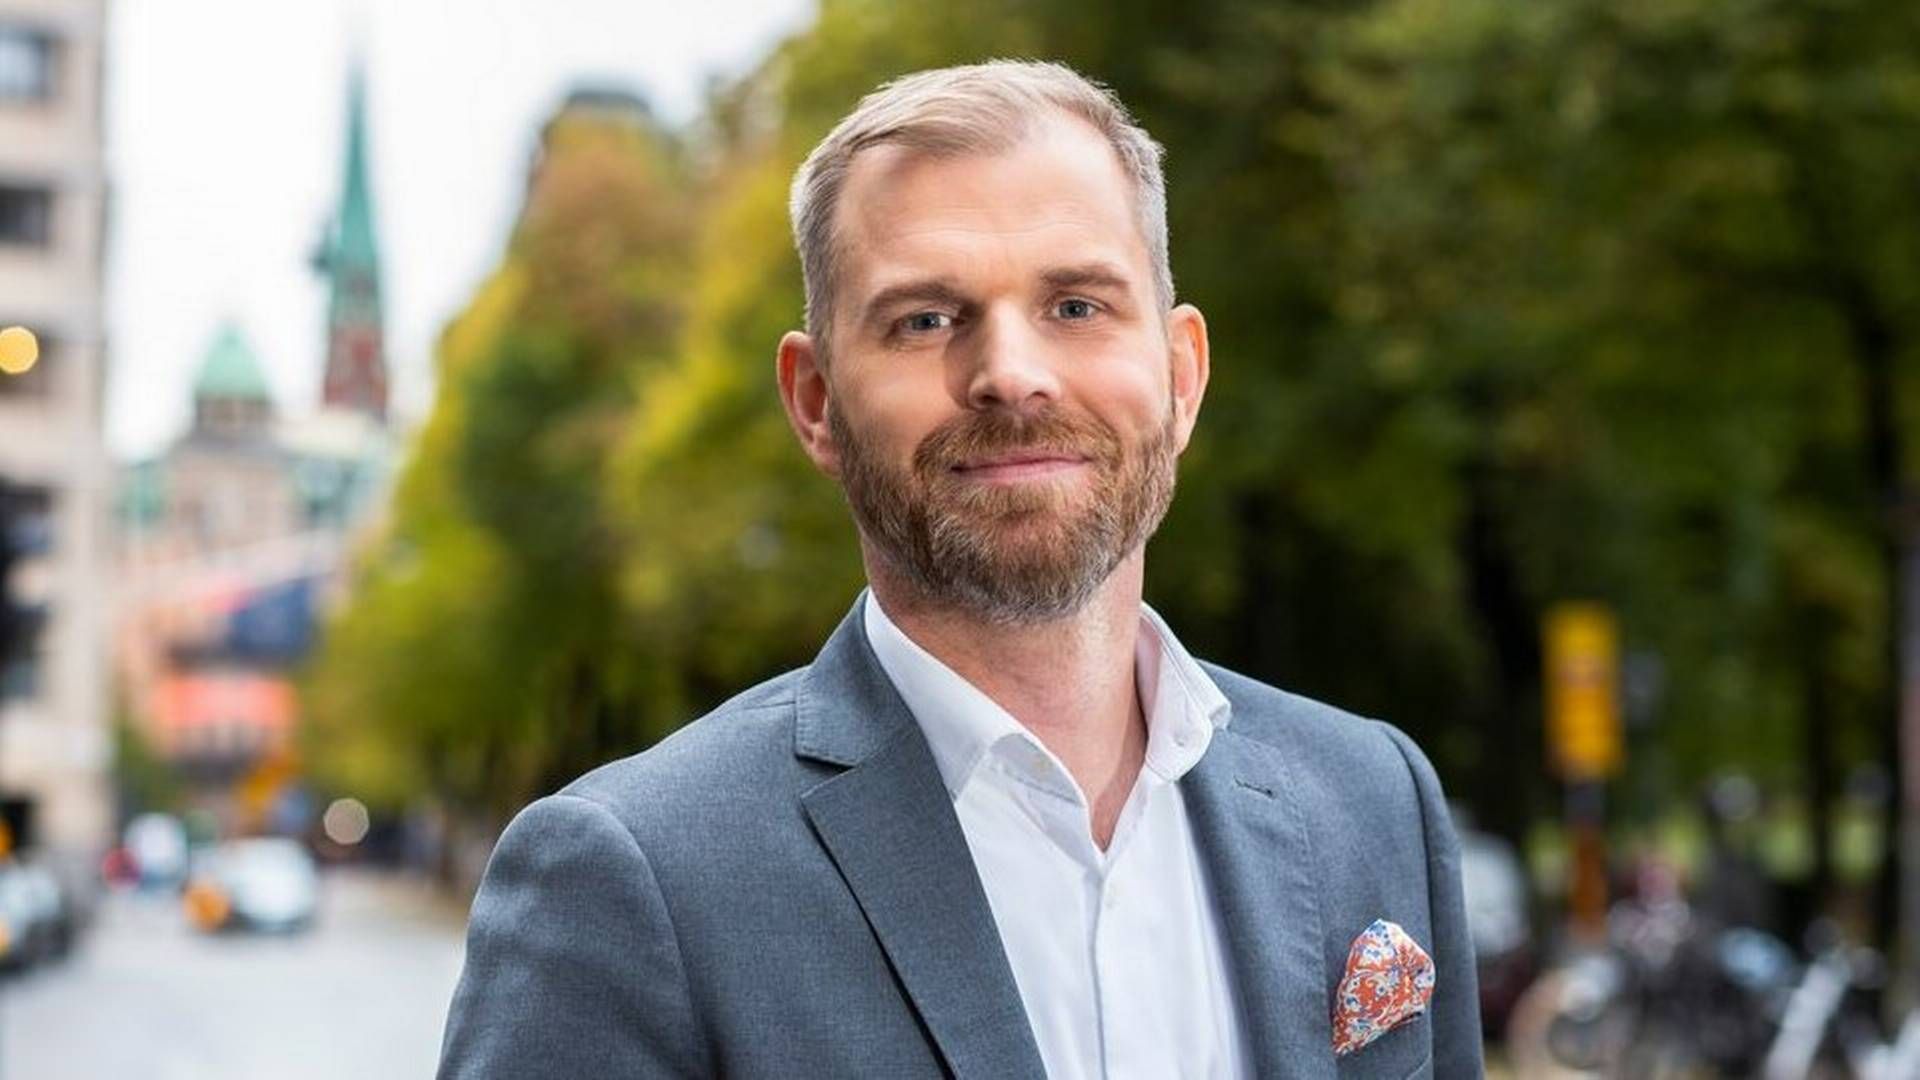 OPP: Eric Johansson startet i Newsec i 2918. Nå får svensken ansvaret for å lede selskapets virksomhet innen eiendomsforvaltning i hele Norden.